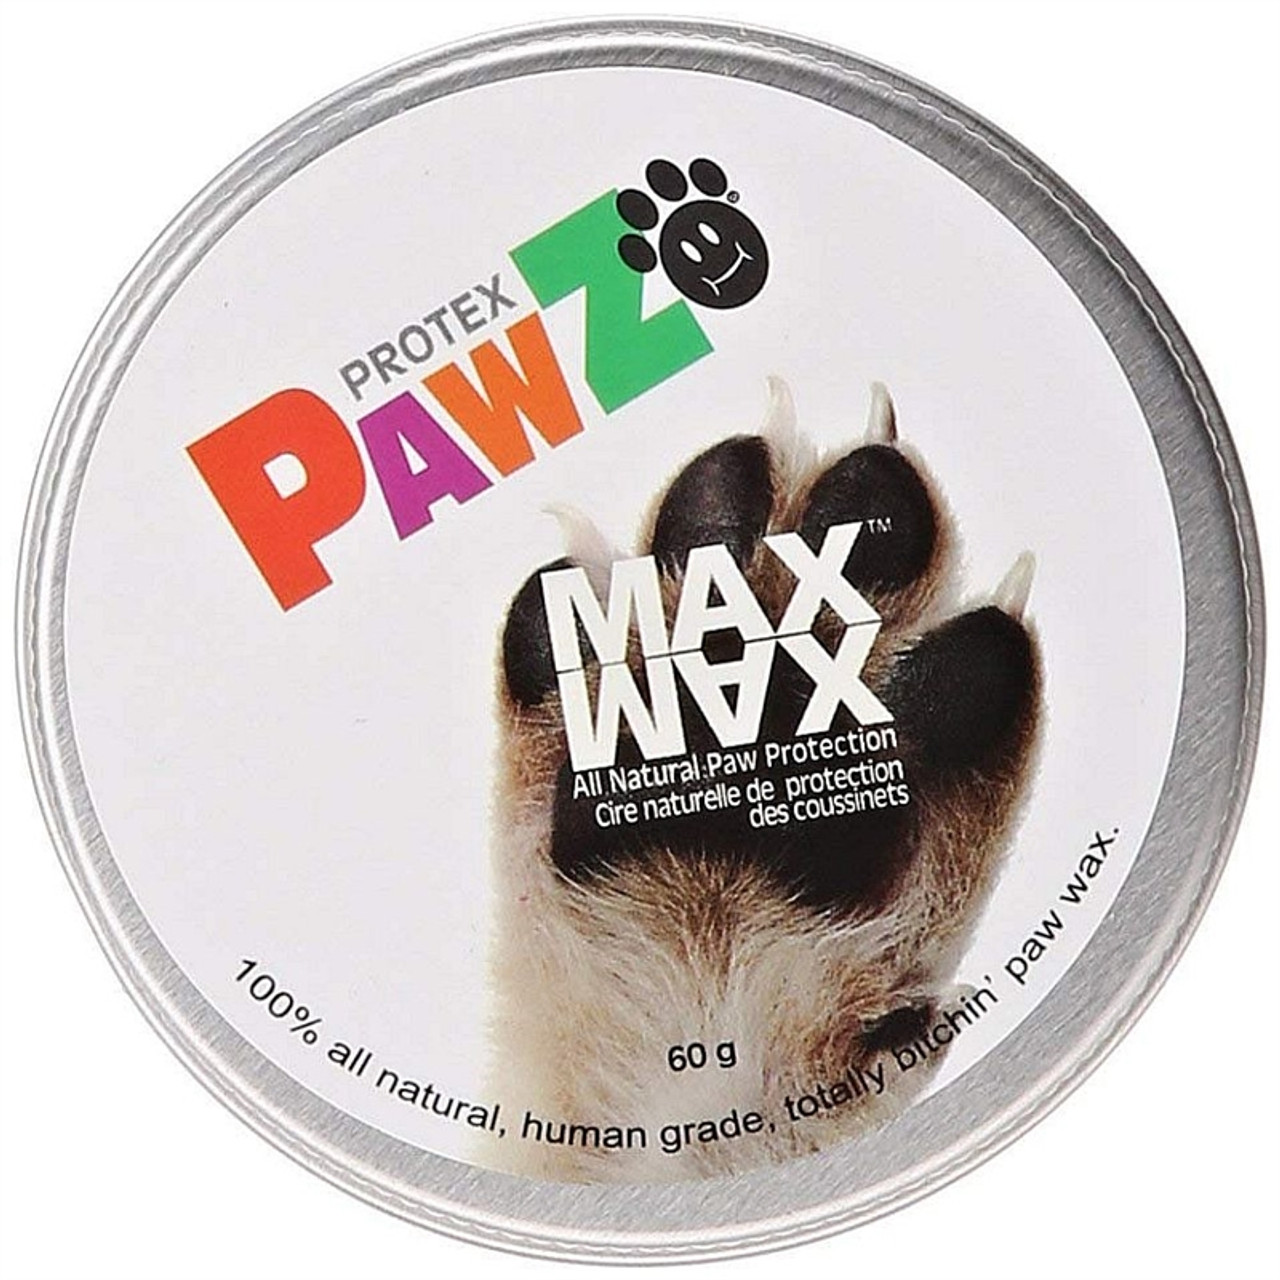 protex pawz max wax